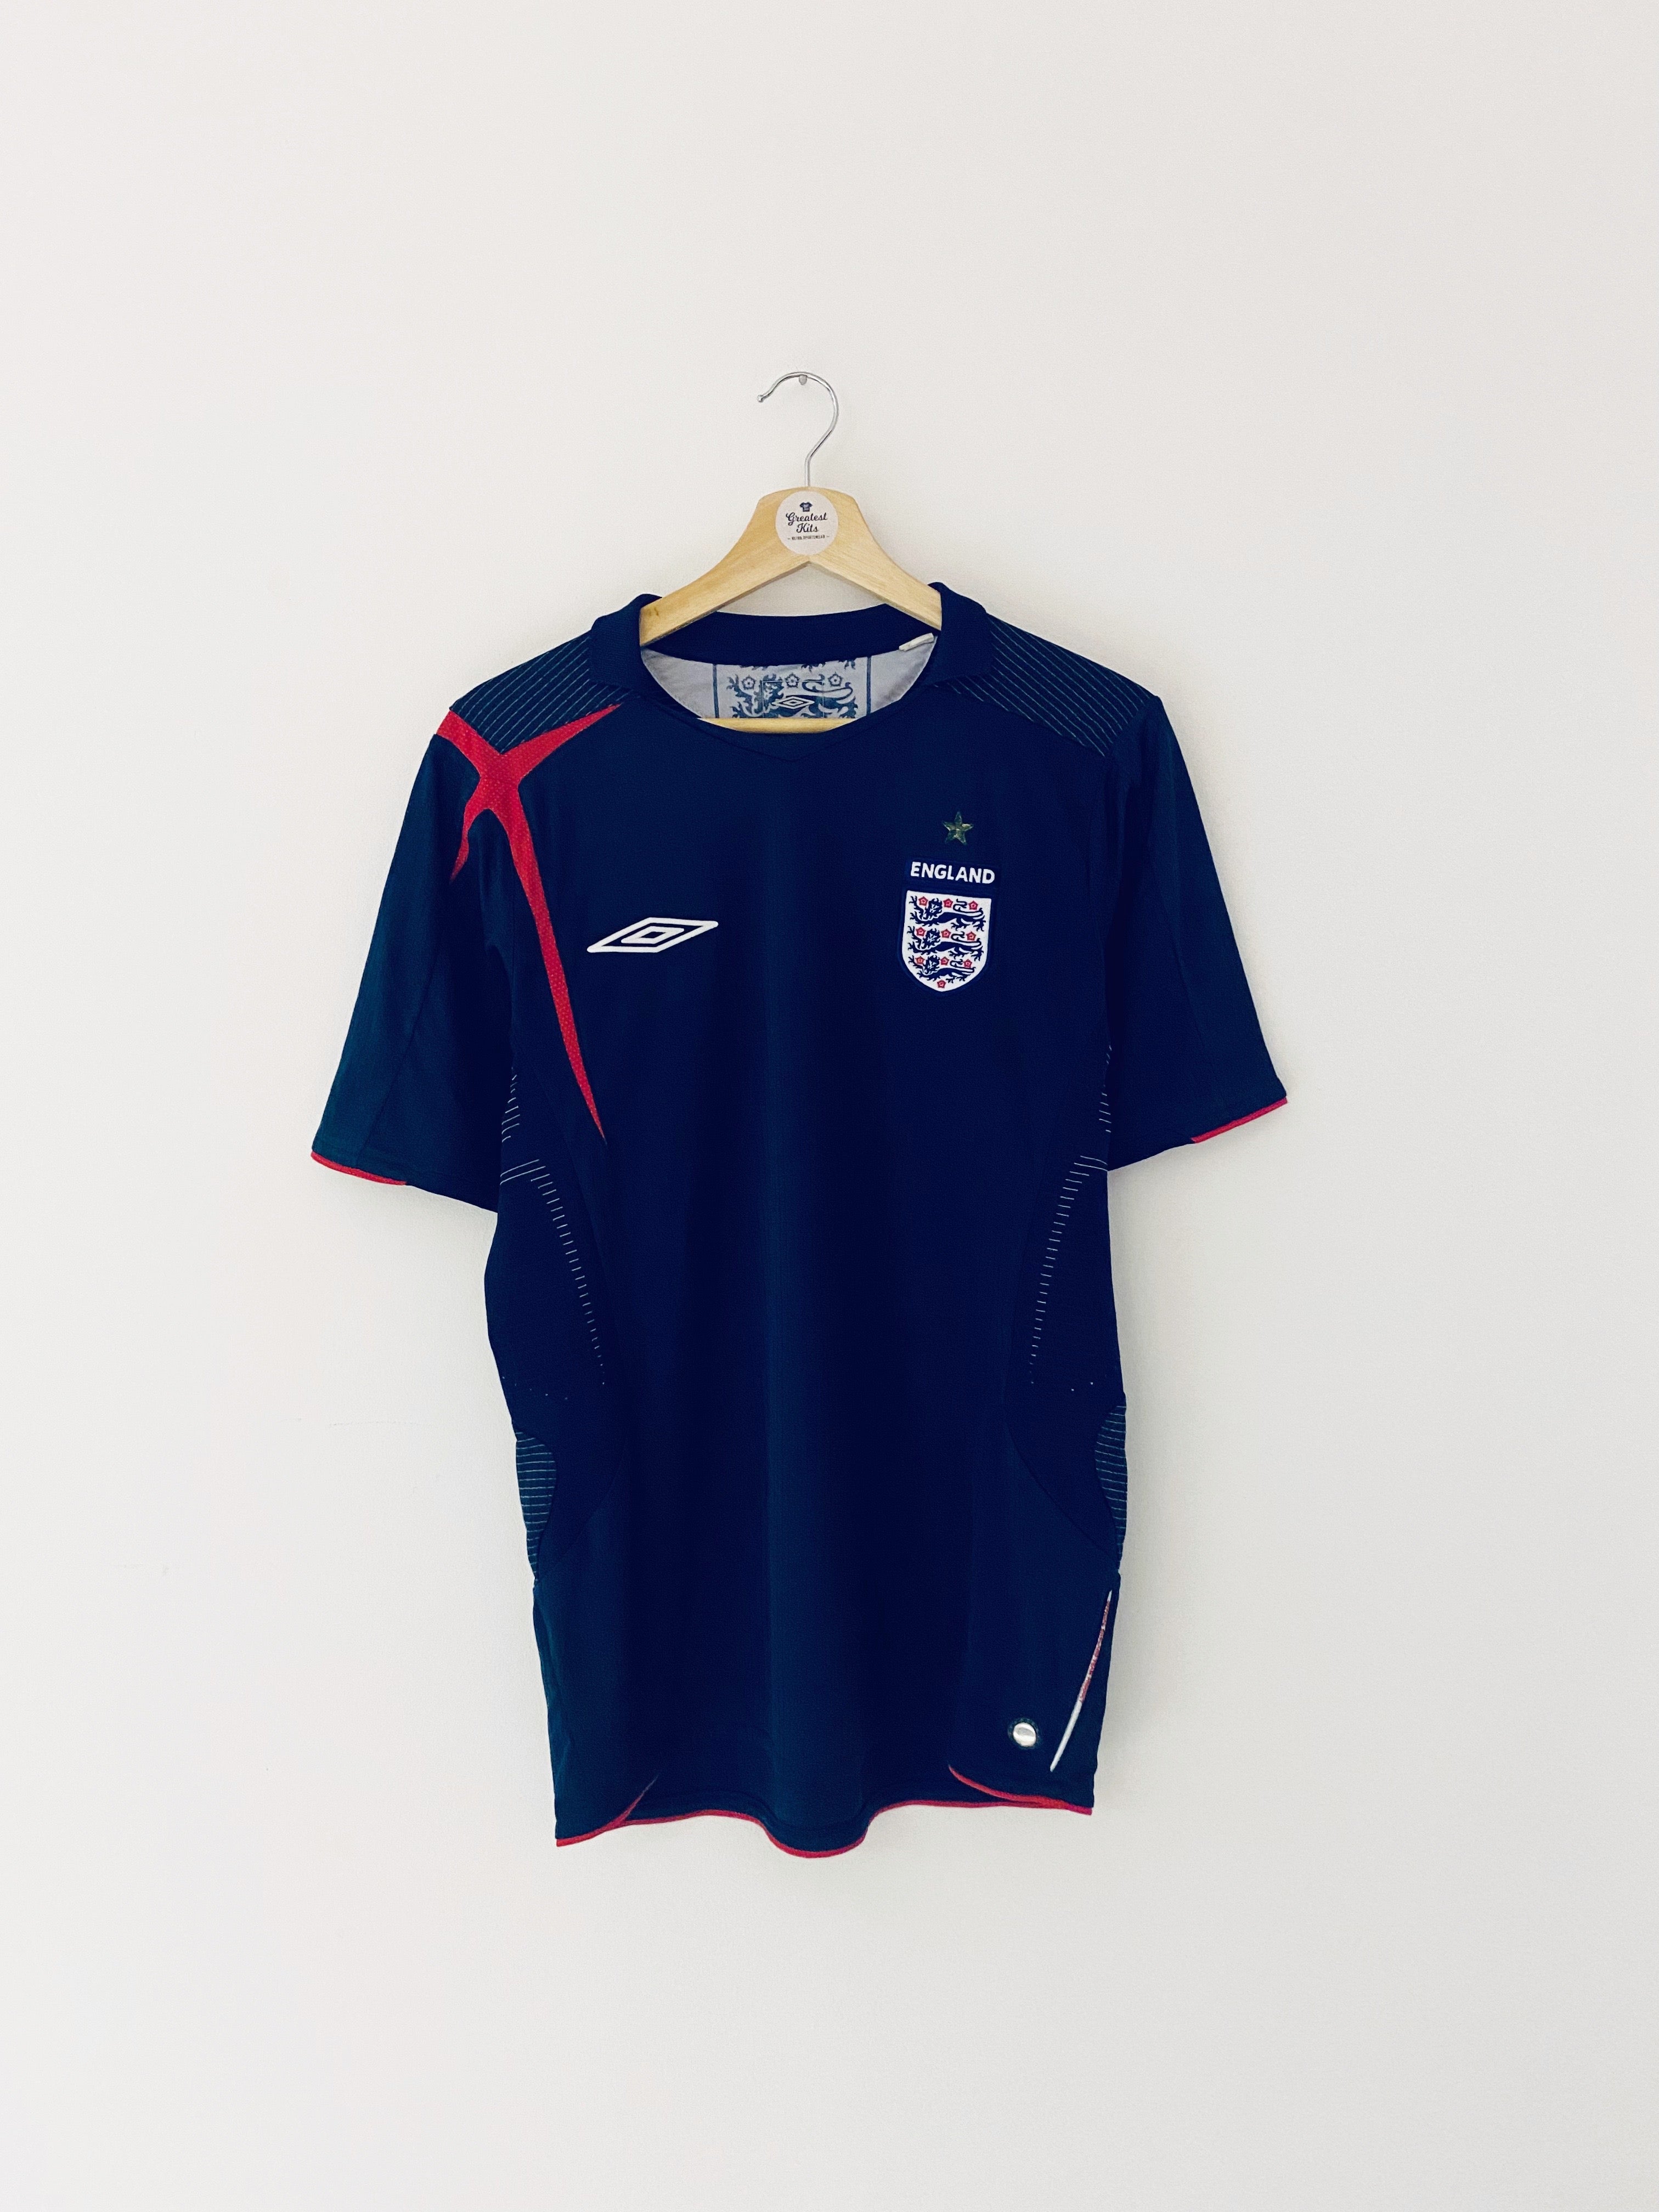 2005/07 England GK Shirt (S) 9/10